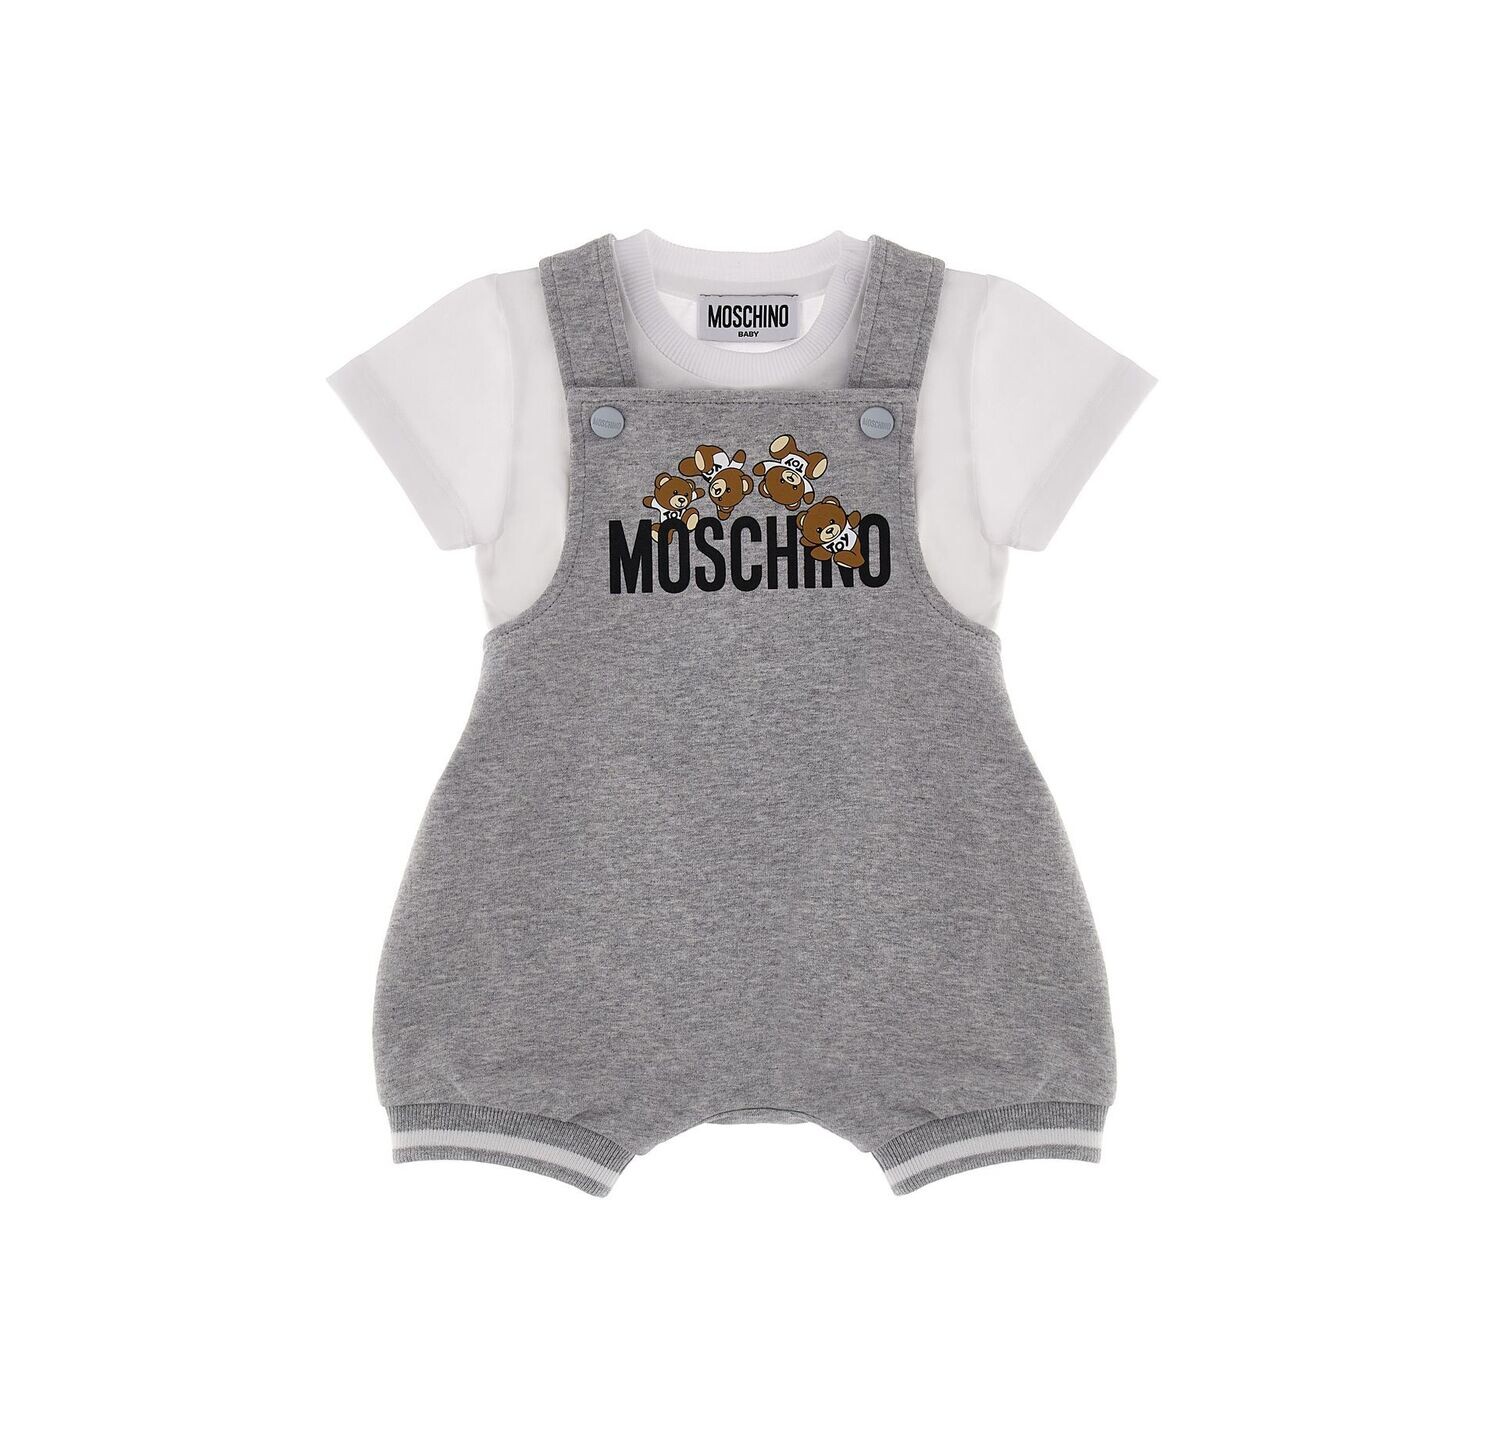 Moschino - Salopette grigio Teddy con t-shirt, Size: 3 mesi